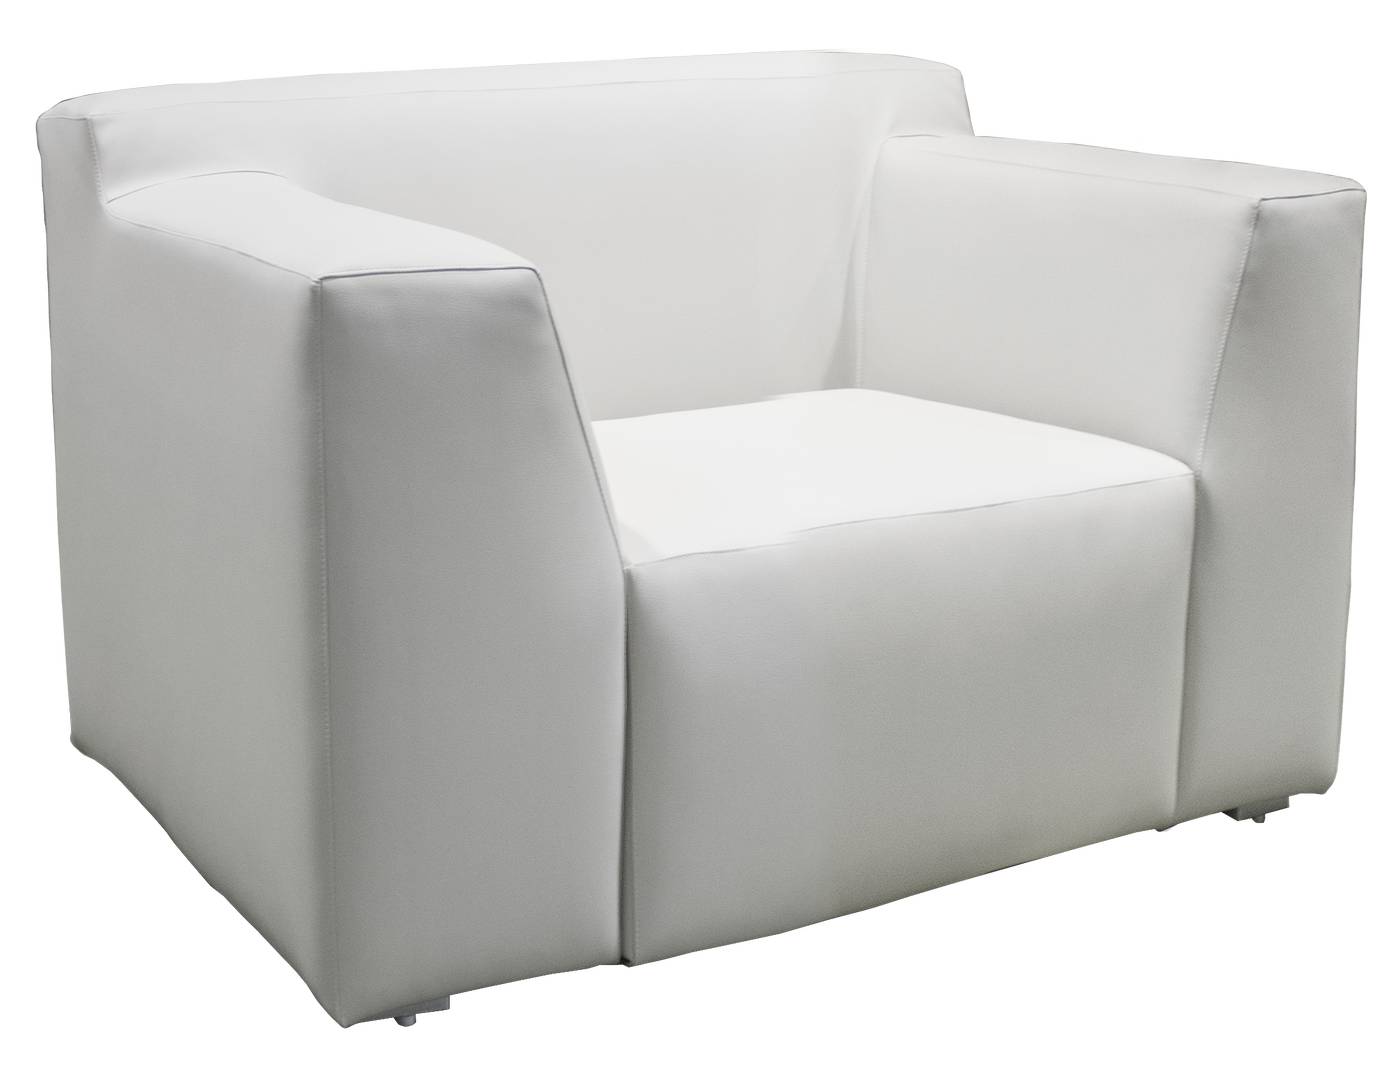 Set Tapizado Basmania - Conjunto de aluminio tapizado con piel nautica o premiun: sofá de 2 o 3 plazas + 2 sillones + 1 mesa de centro. Disponible en varios colores y tipos de tapizado.